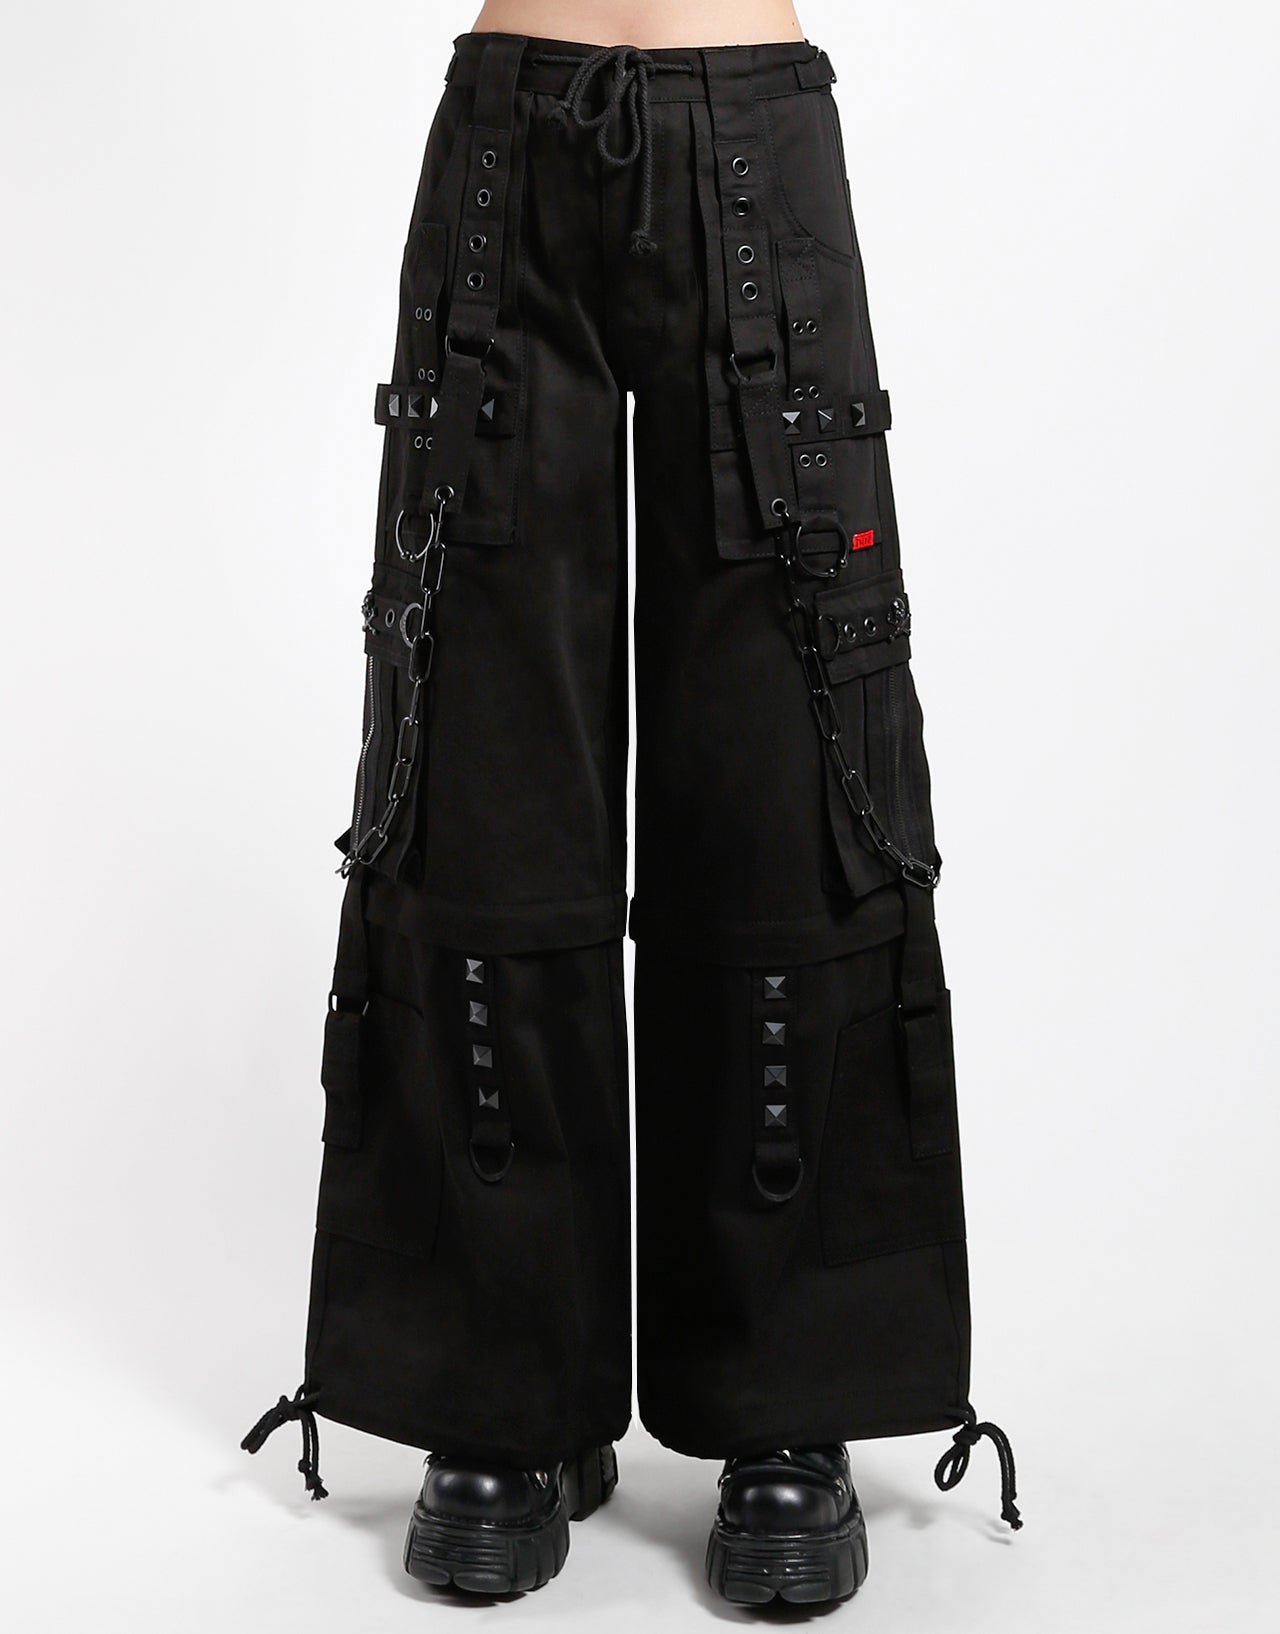 Vintage Y2K Daang Goodman Tripp NYC Black Pants / Goth Chains and